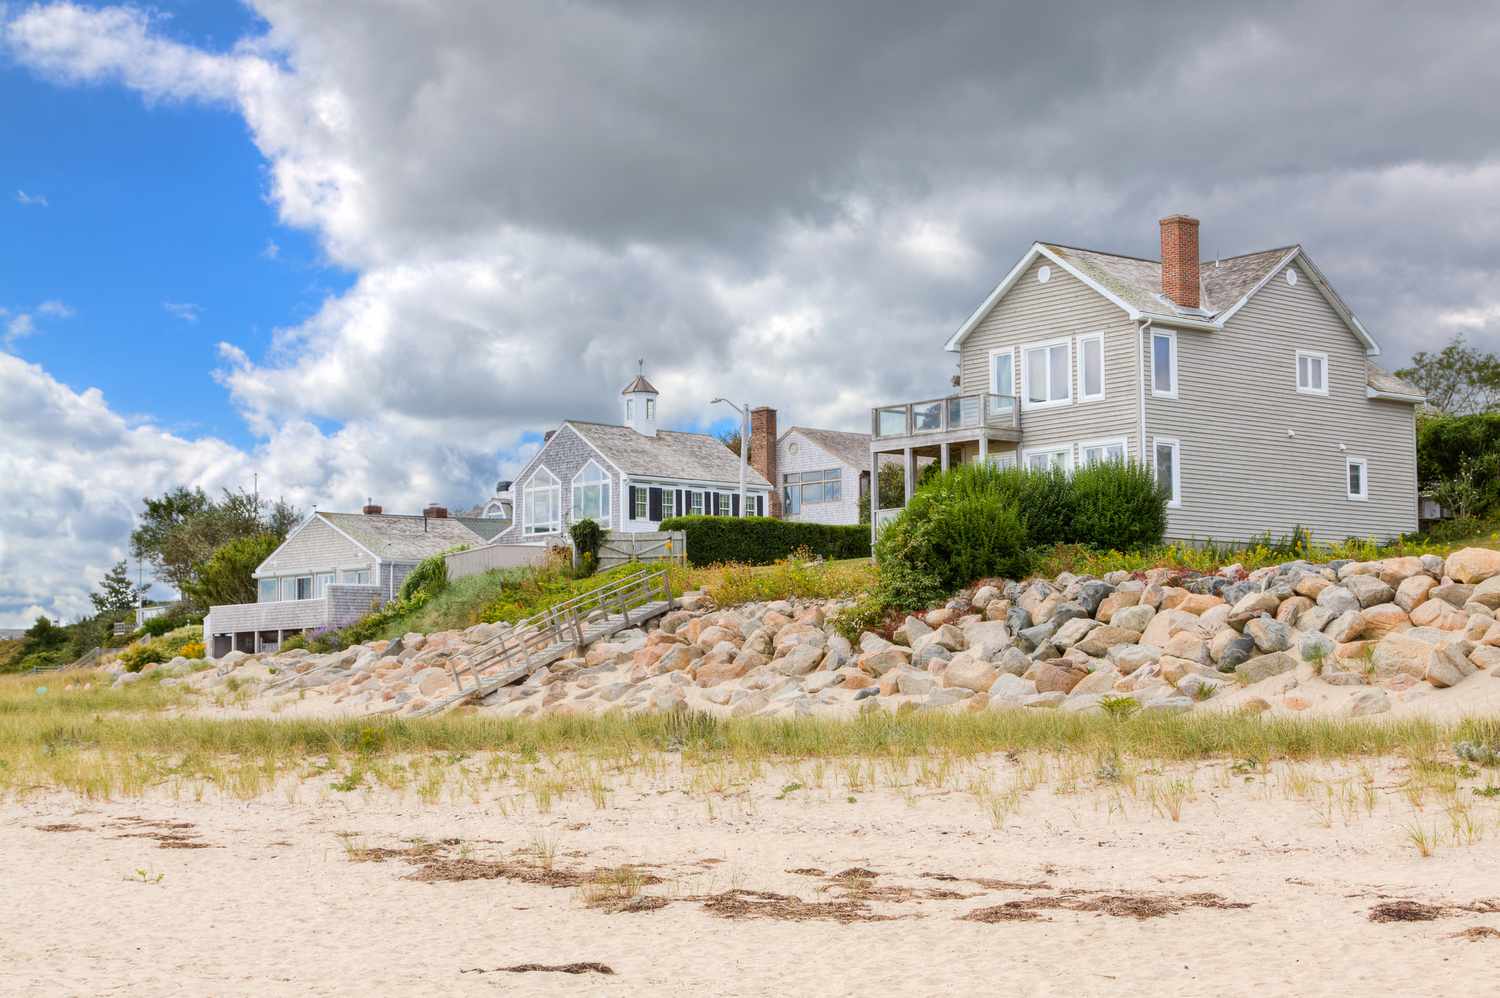 Luxuriöse Häuser am Wasser in Neuengland, Chatham, Cape Cod, Massachusetts, USA.